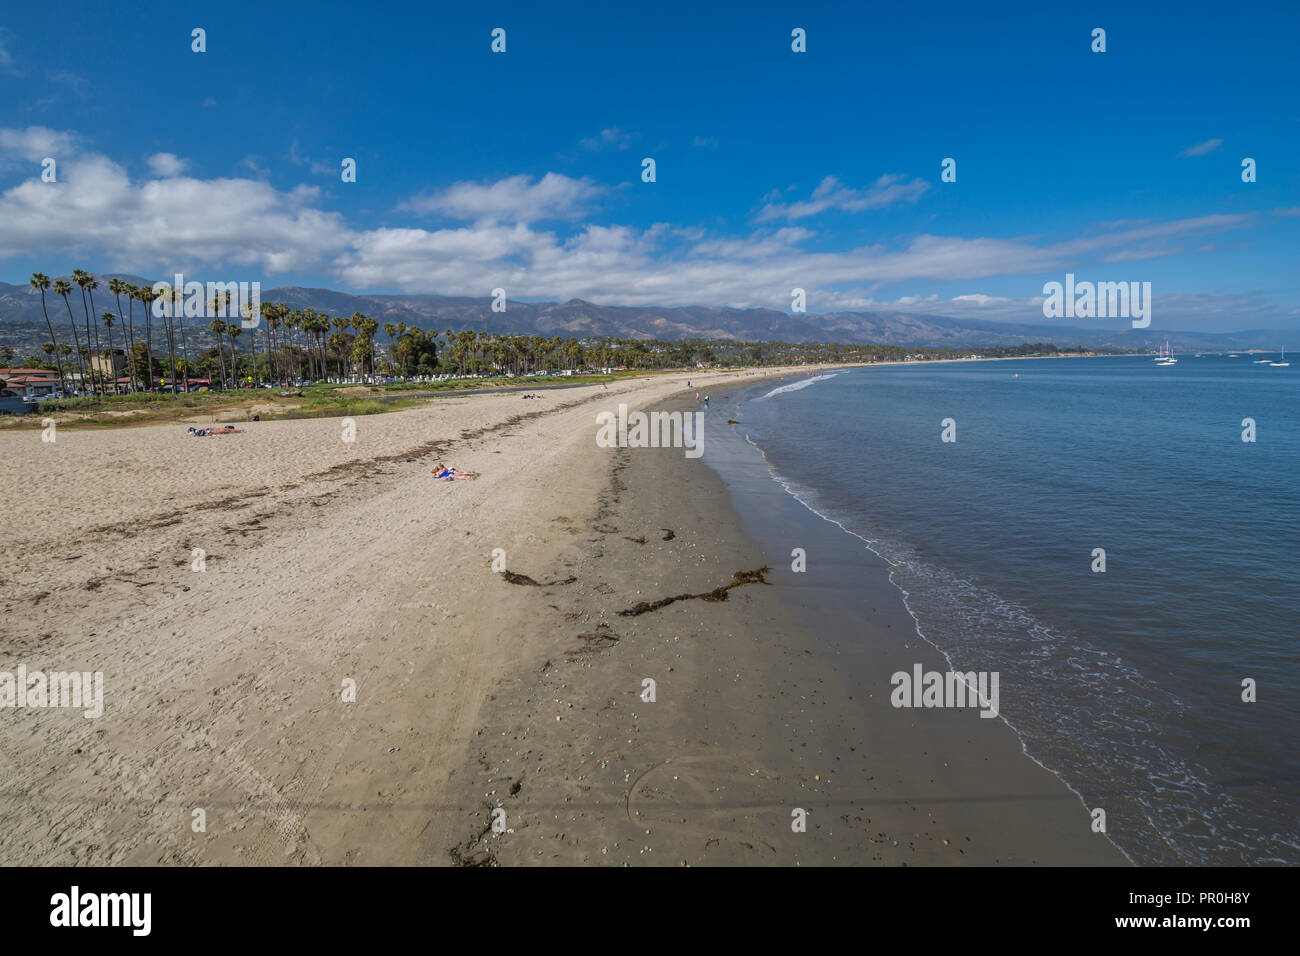 Blick auf den Strand von Stearns Wharf, Santa Barbara, Santa Barbara County, Kalifornien, Vereinigte Staaten von Amerika, Nordamerika Stockfoto